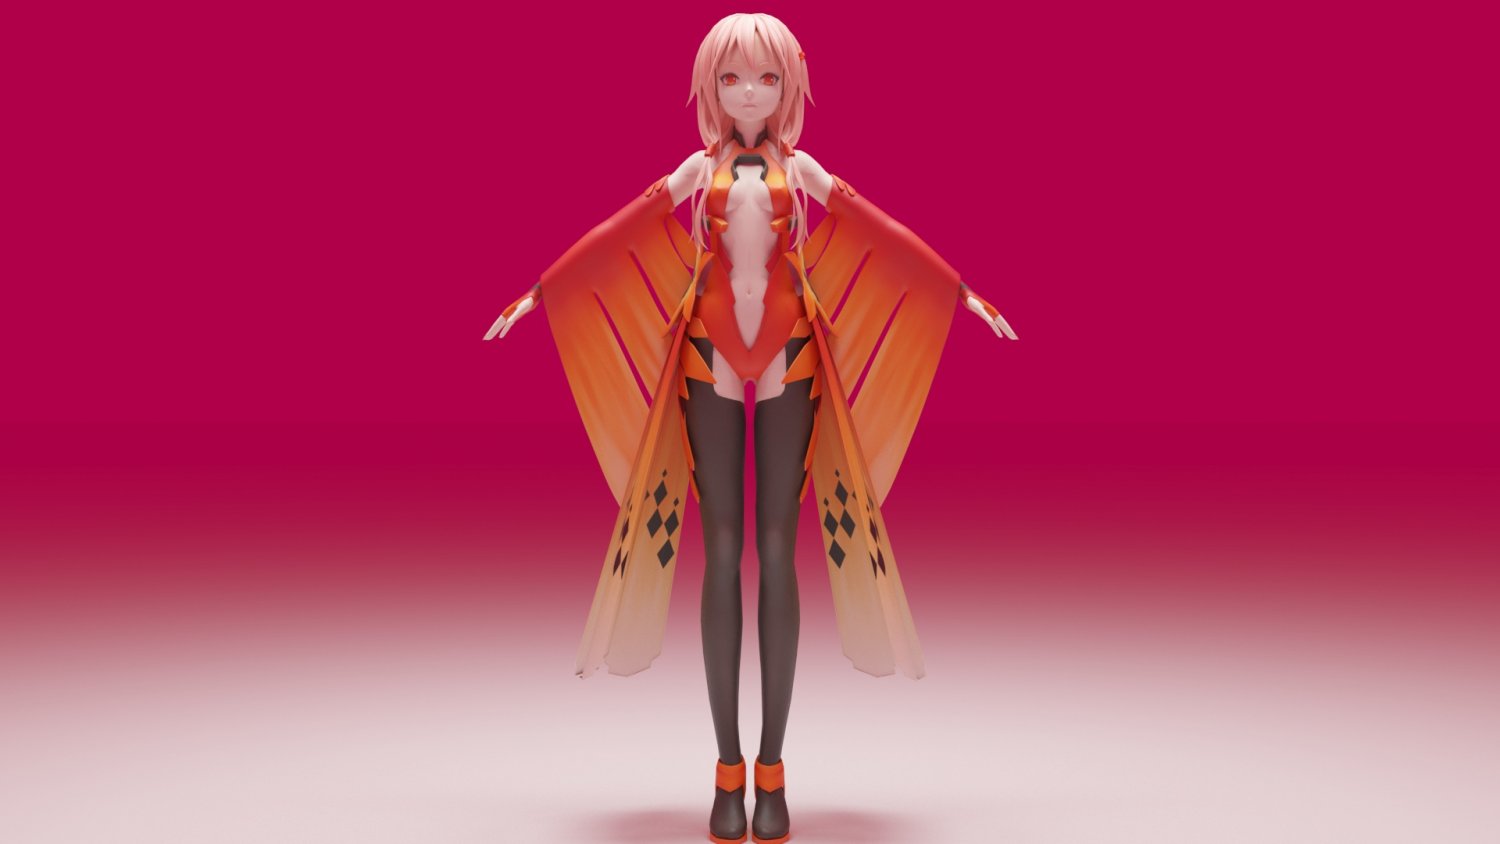 Yuzuriha Inori - Guilty Crown 3D Model